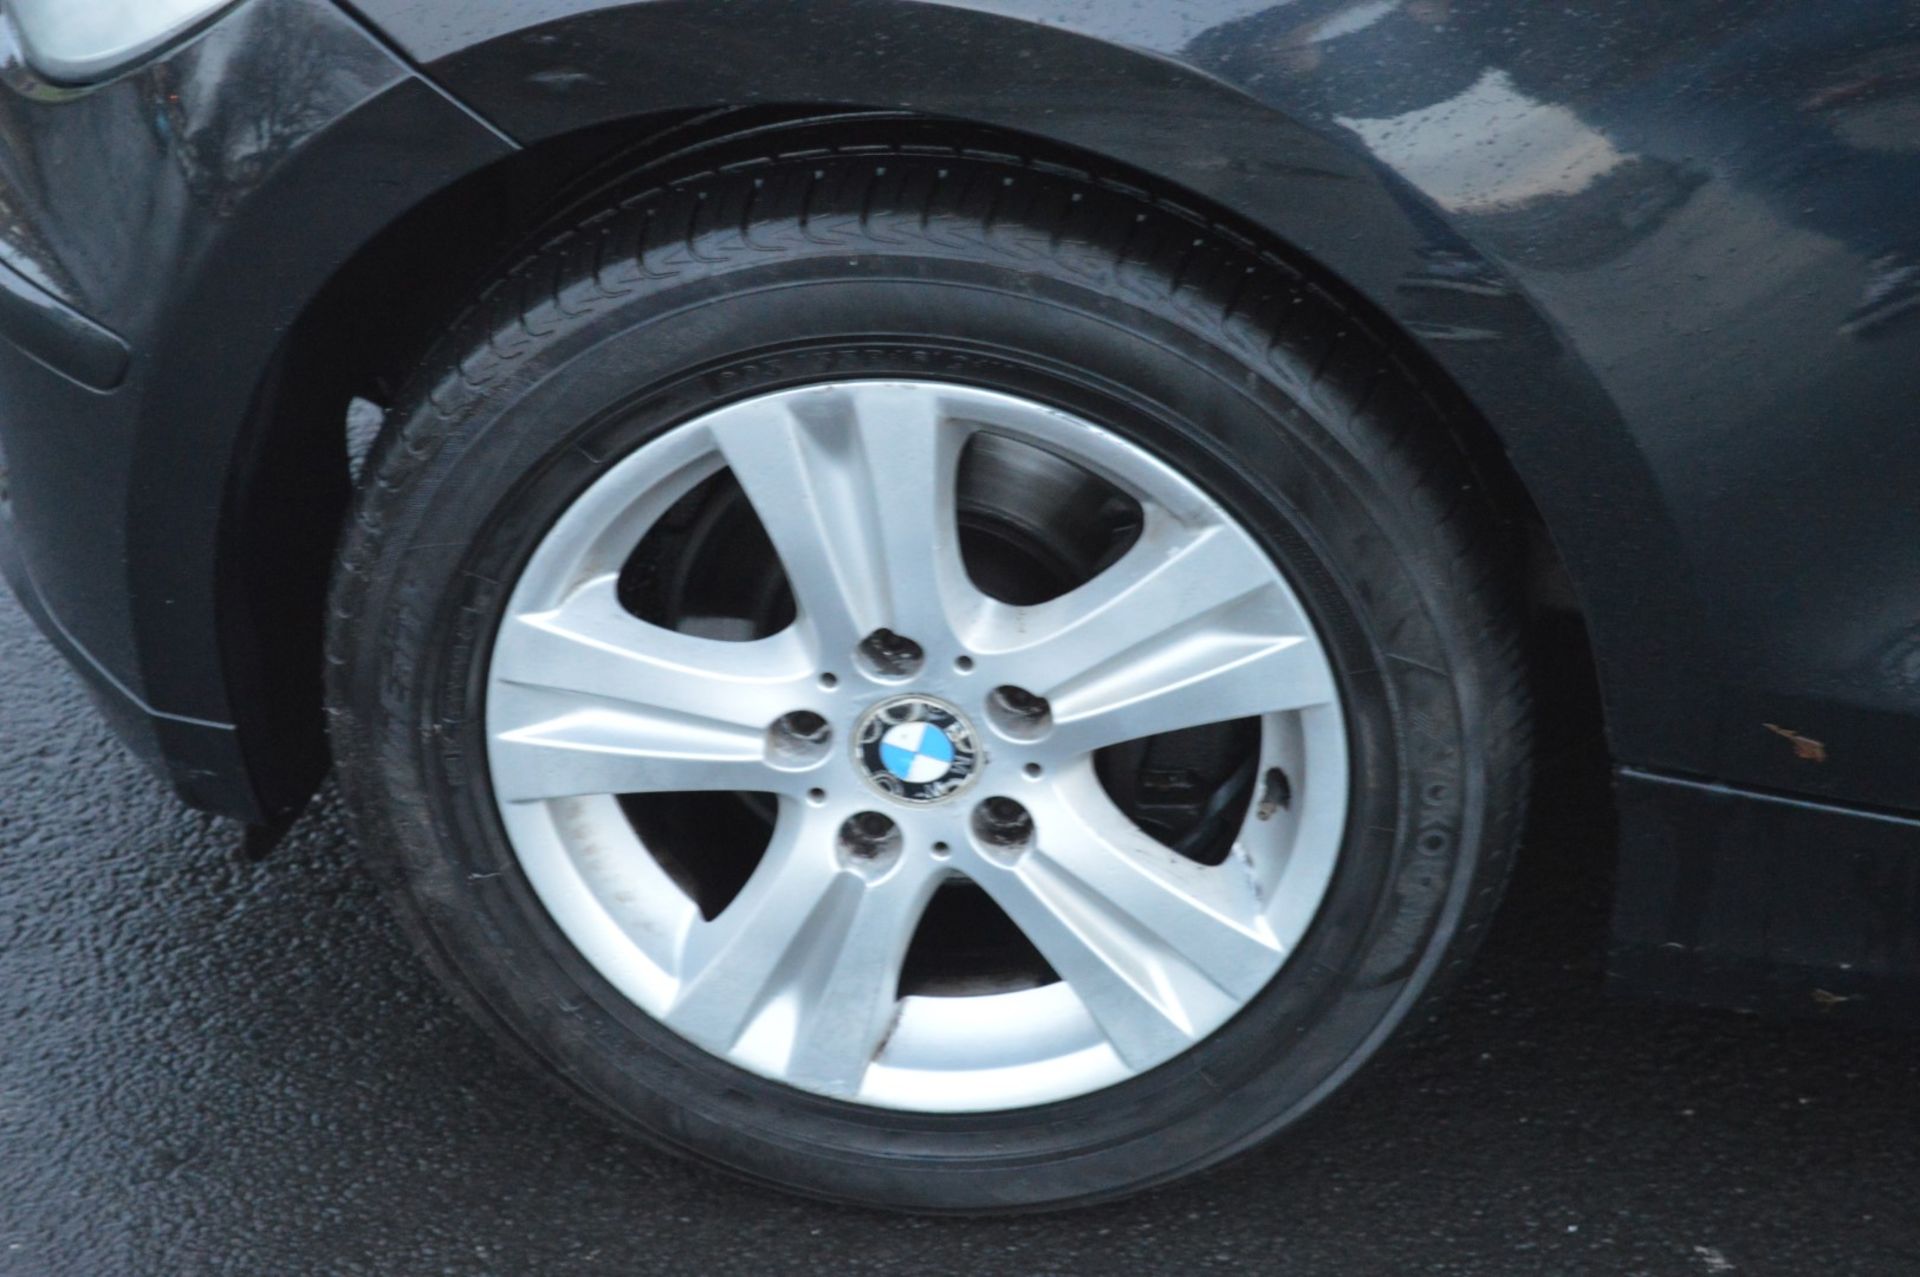 1 x 2008 BMW 1 Series 118d 3 Door Black 2l - £30 Per Year Road Tax - MOT Until January 2020 - - Image 7 of 31